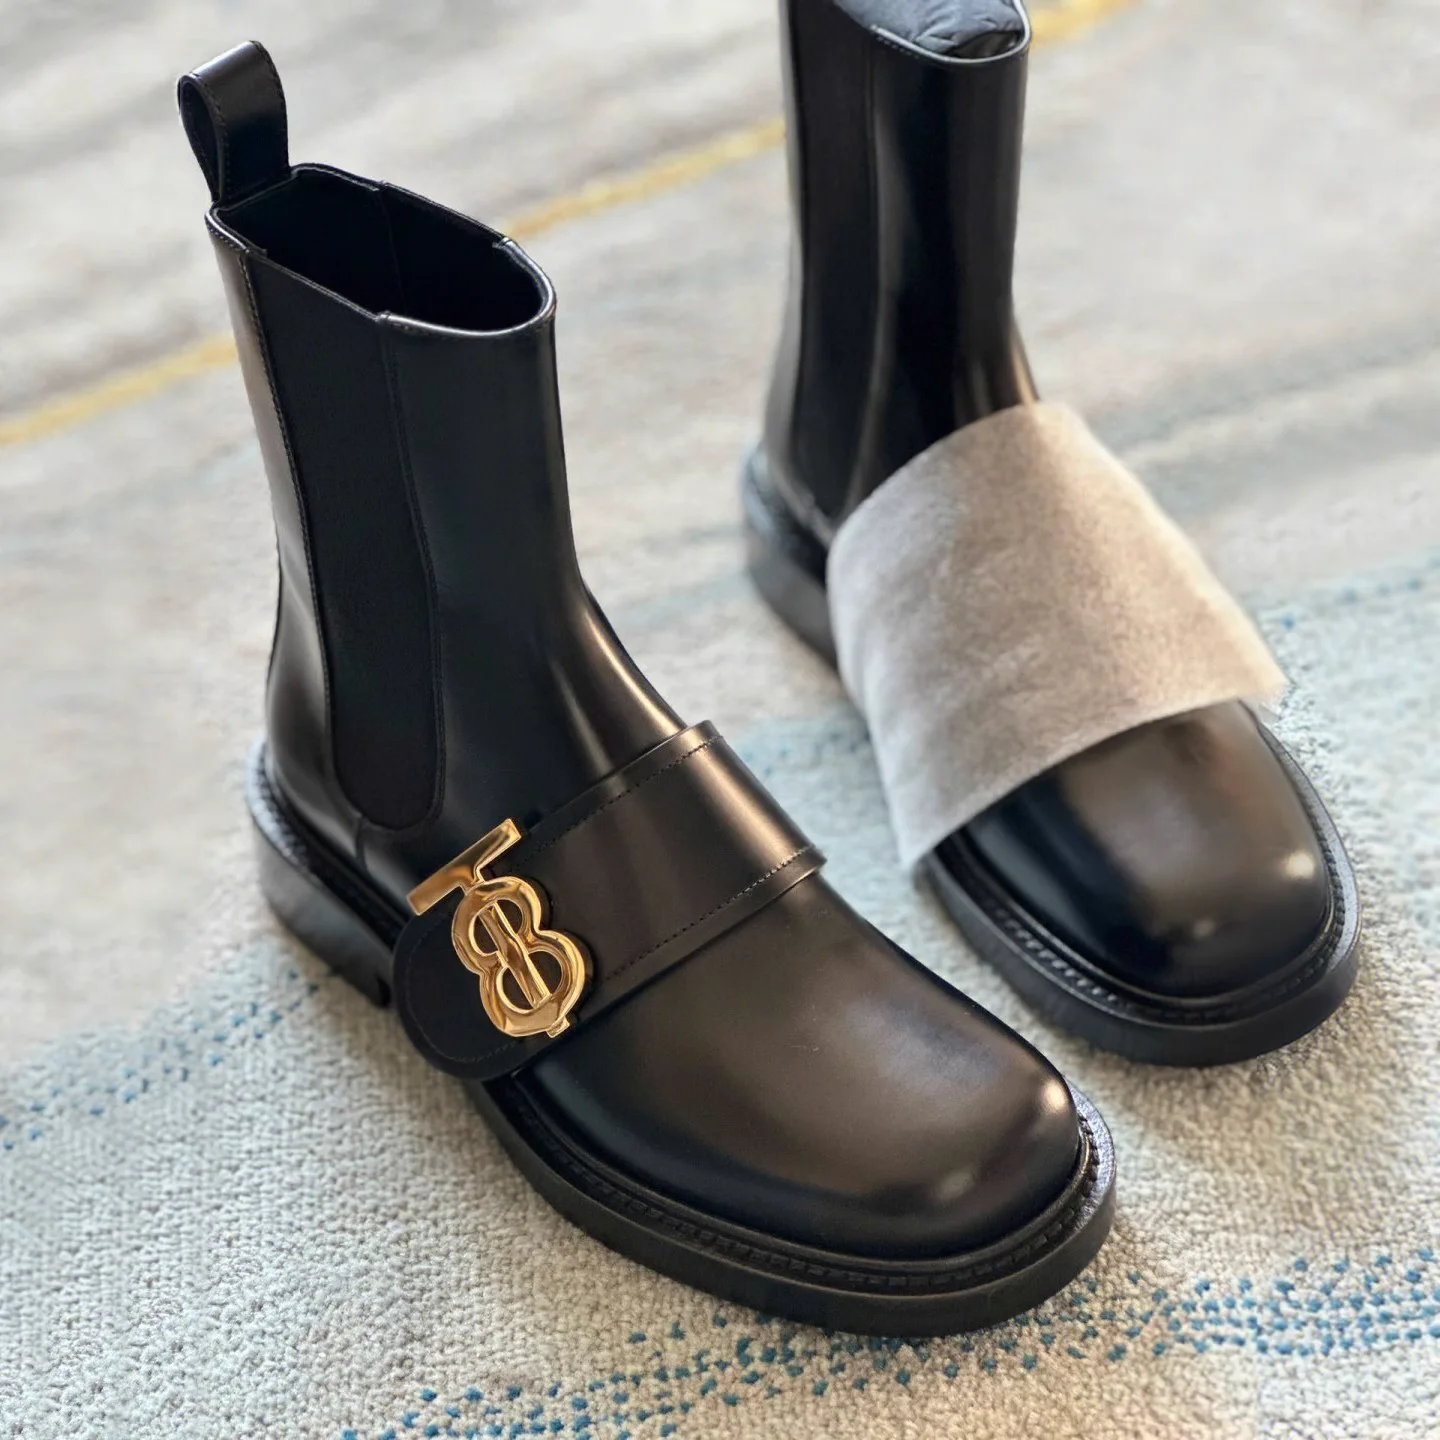 

Ботинки Челси с металлической пряжкой и надписью, короткие сапоги на платформе в английском стиле, зимние кожаные сапоги, женские теплые сапоги до середины икры на массивном каблуке